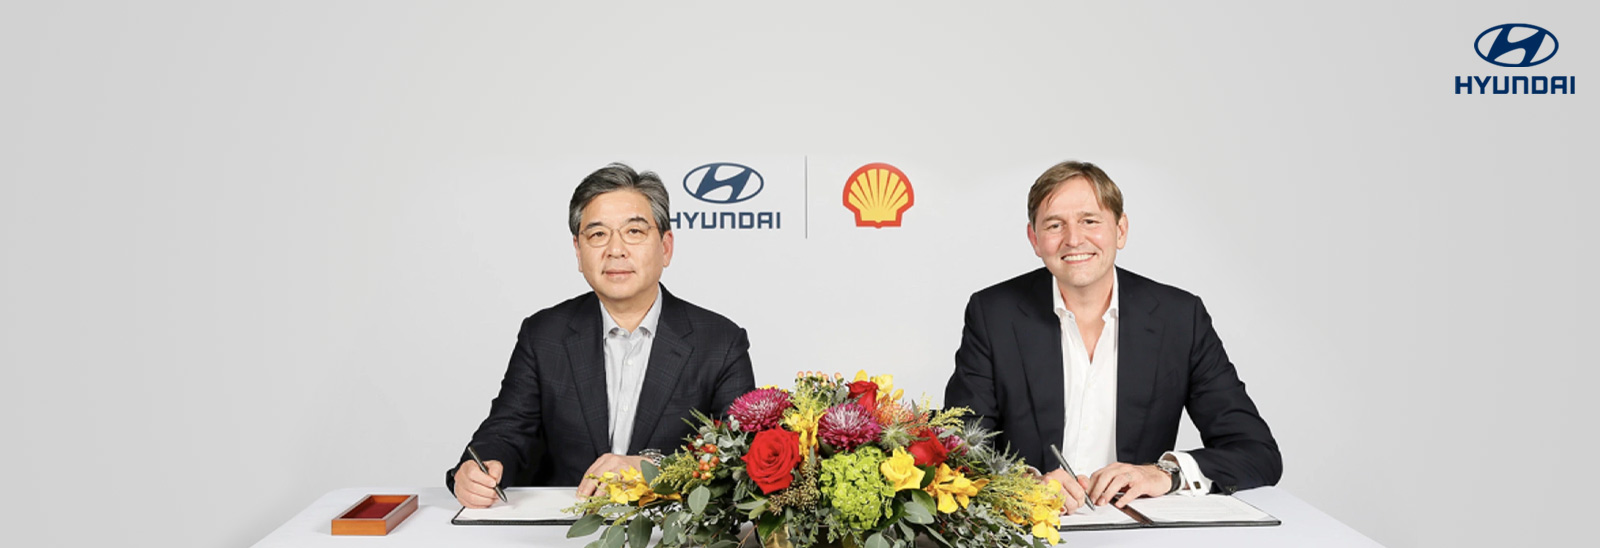 Ejecutivos de Hyundai y Shell firmando acuerdo comercial